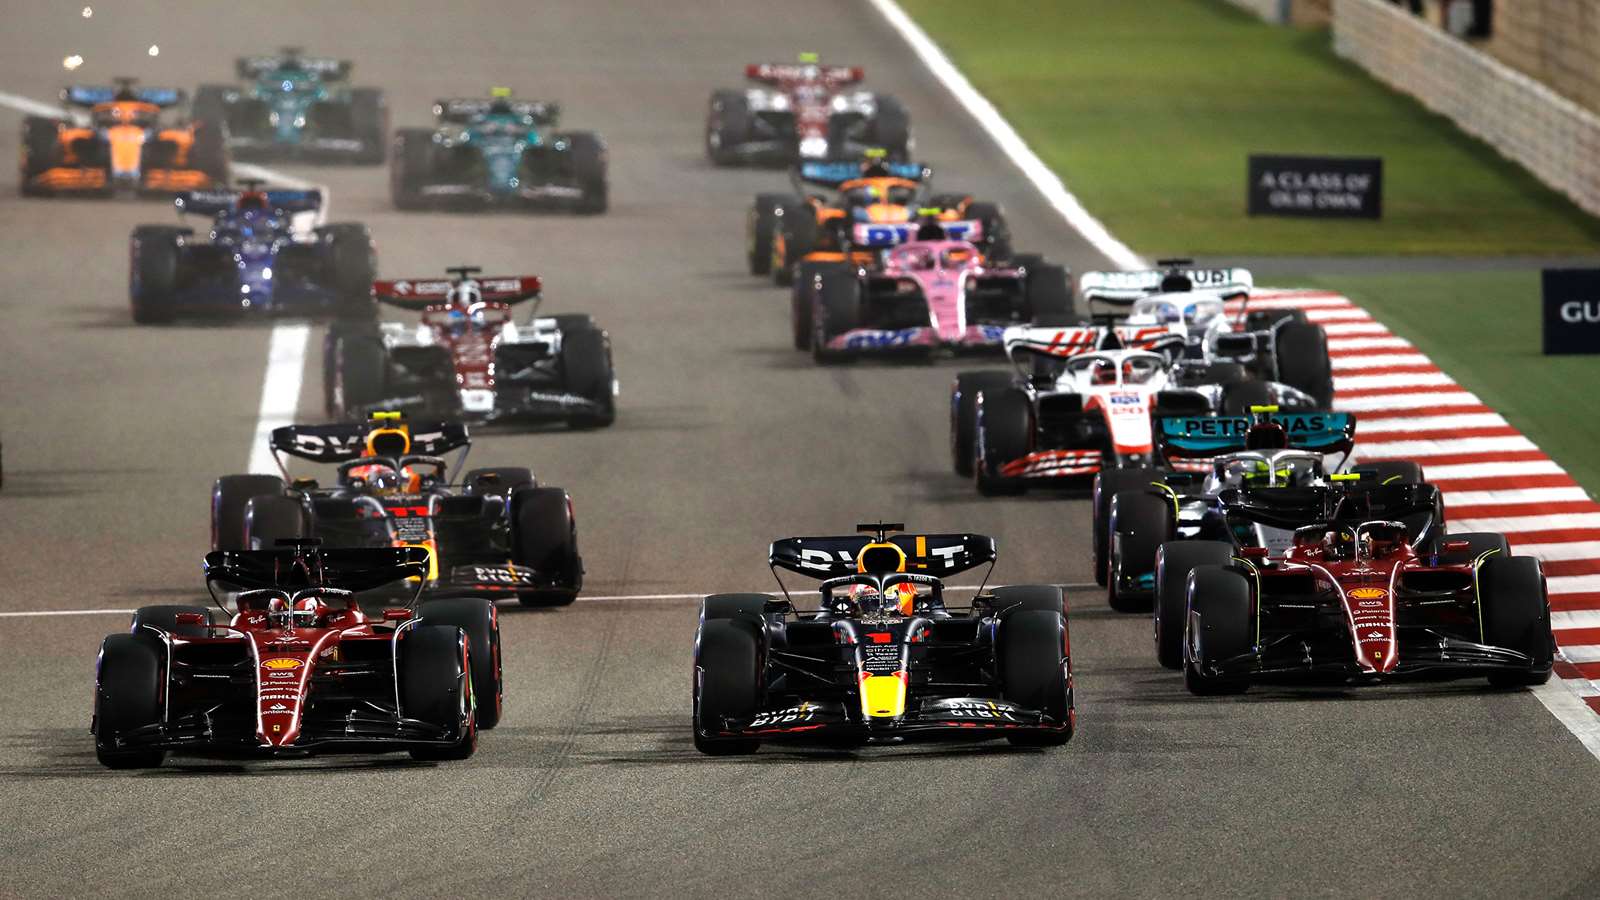 F1 22 Teams, Cars & Drivers